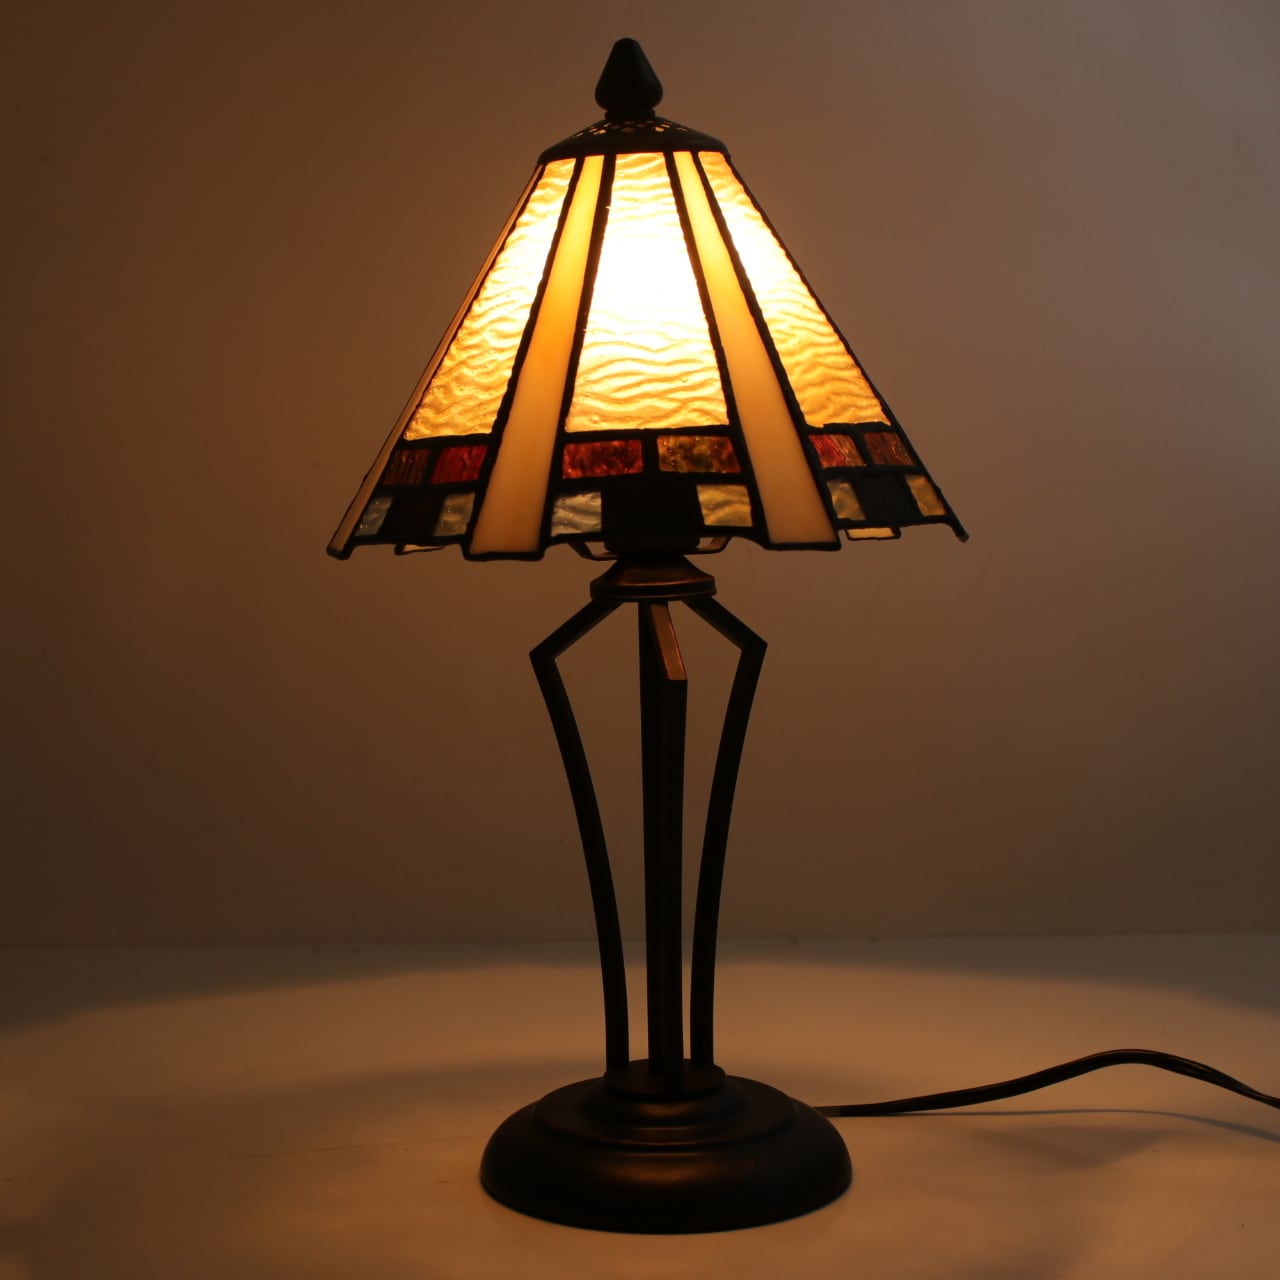 ステンドグラス ランプ おしゃれ 照明 テーブルランプ ランプ